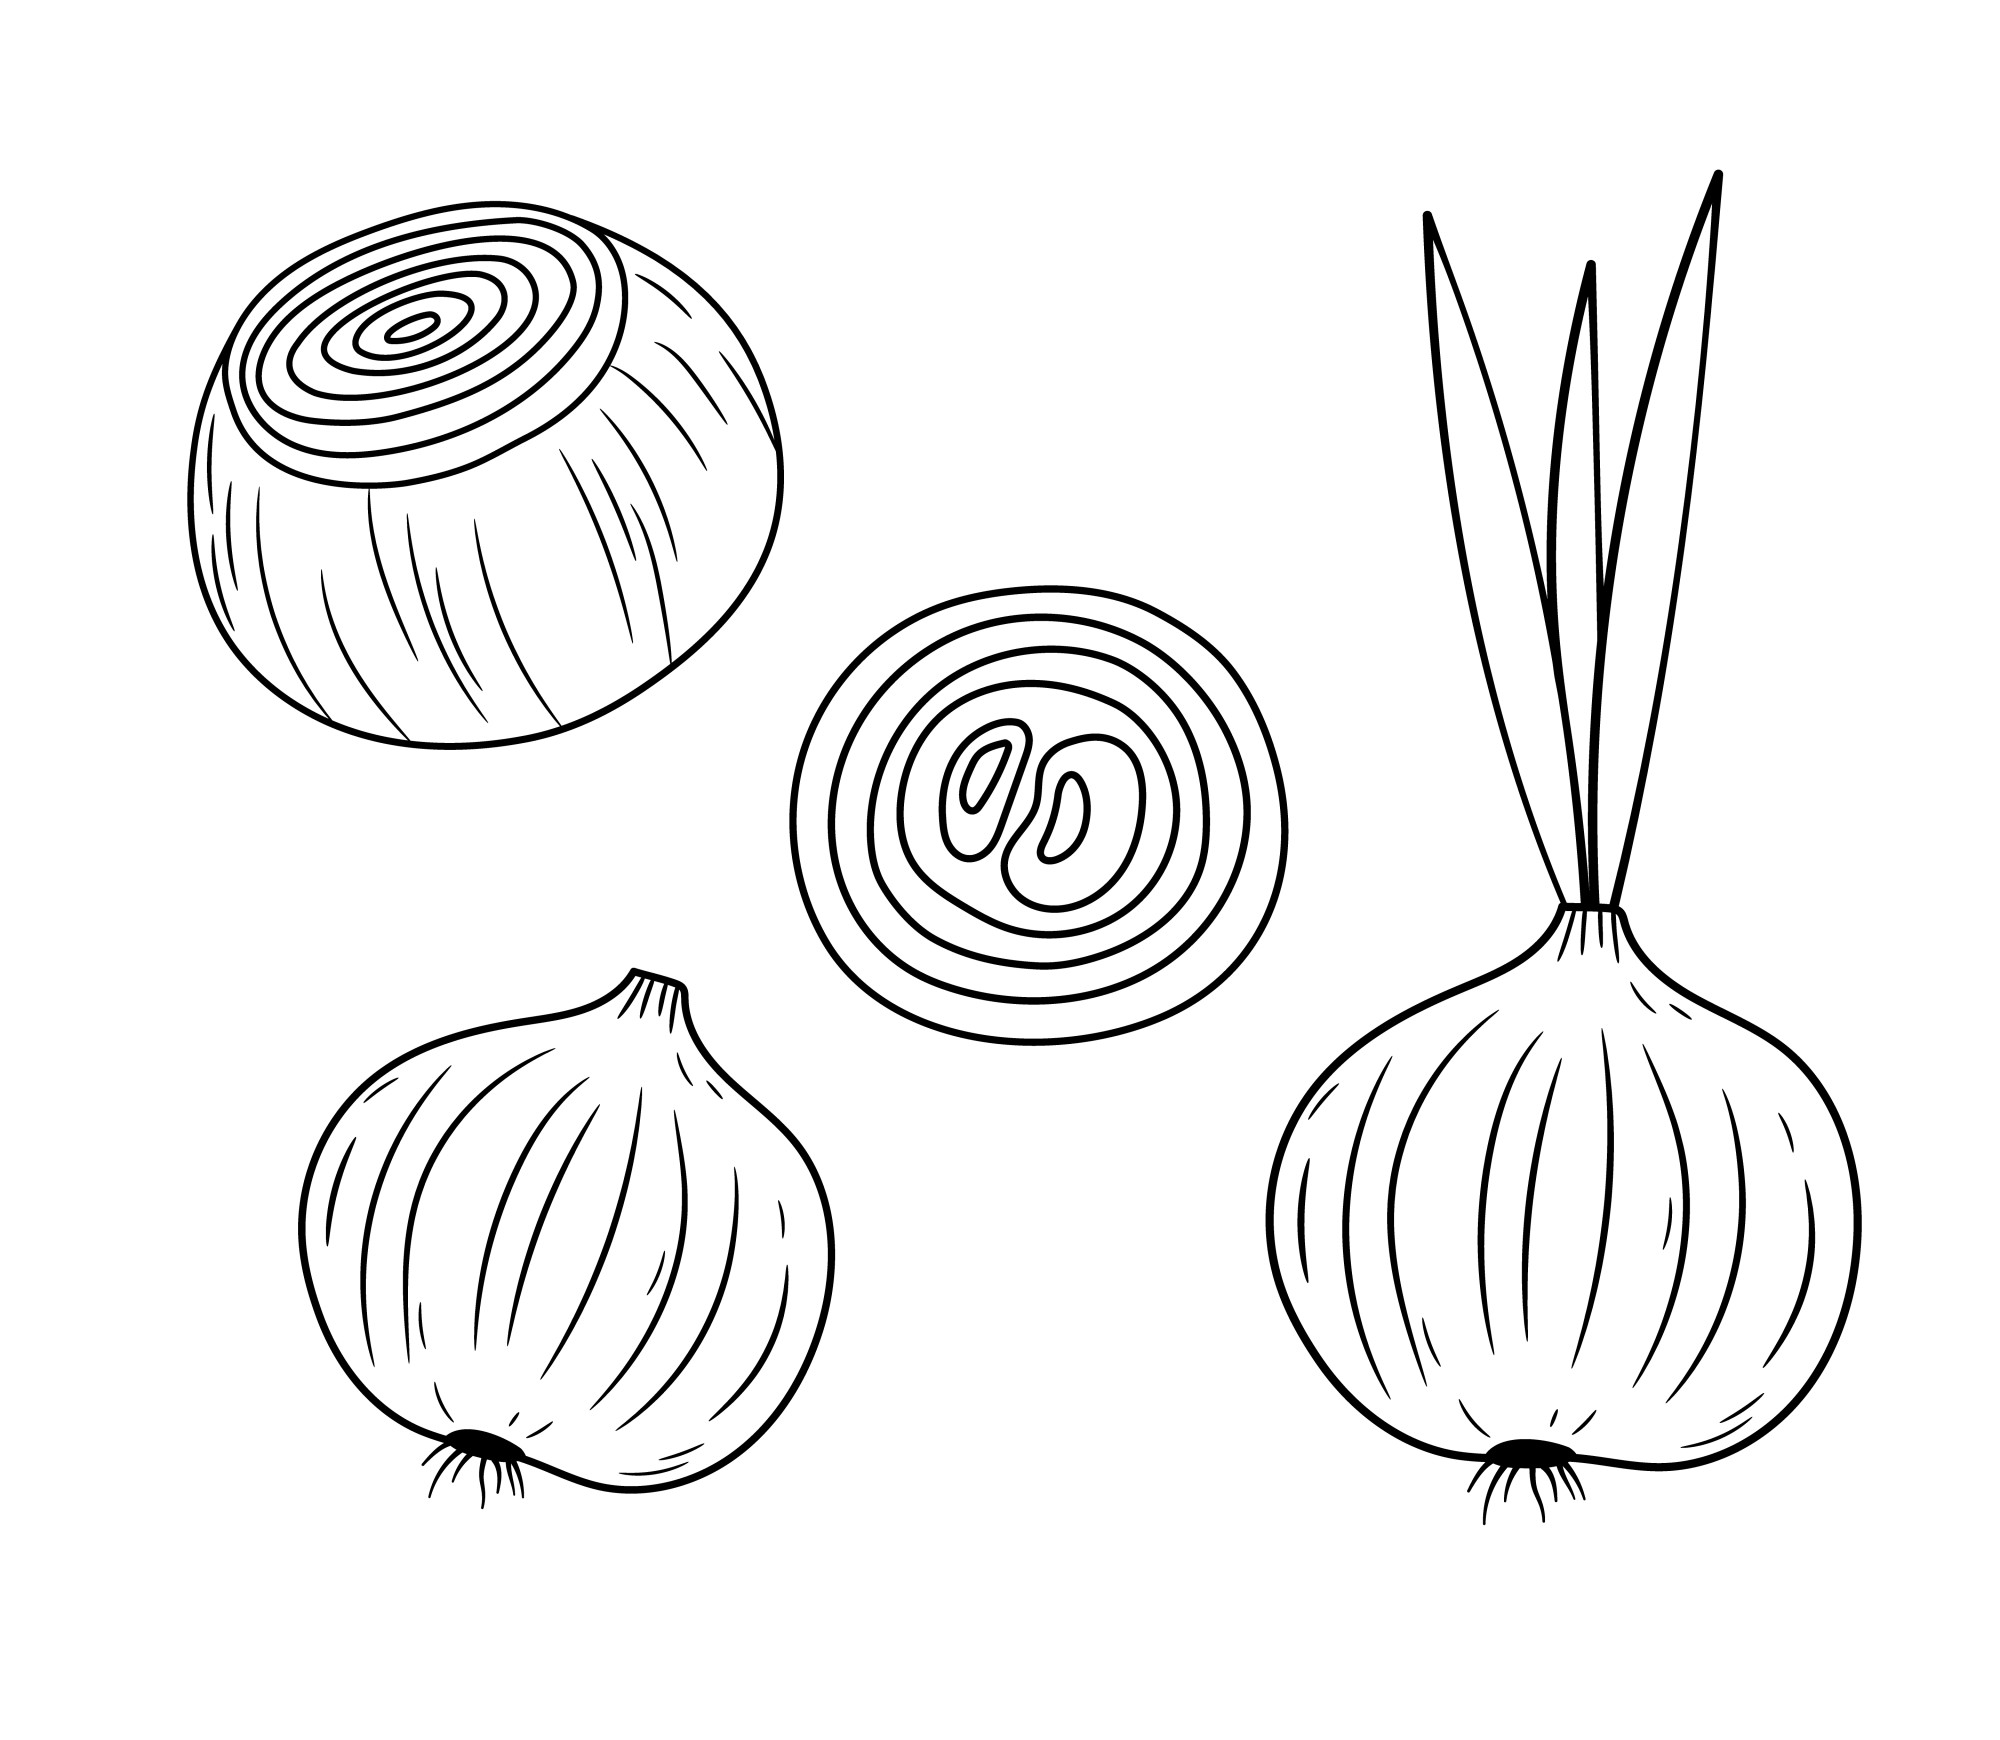 Раскраска для детей: овощная луковица и кольцо свежего очищенного лука